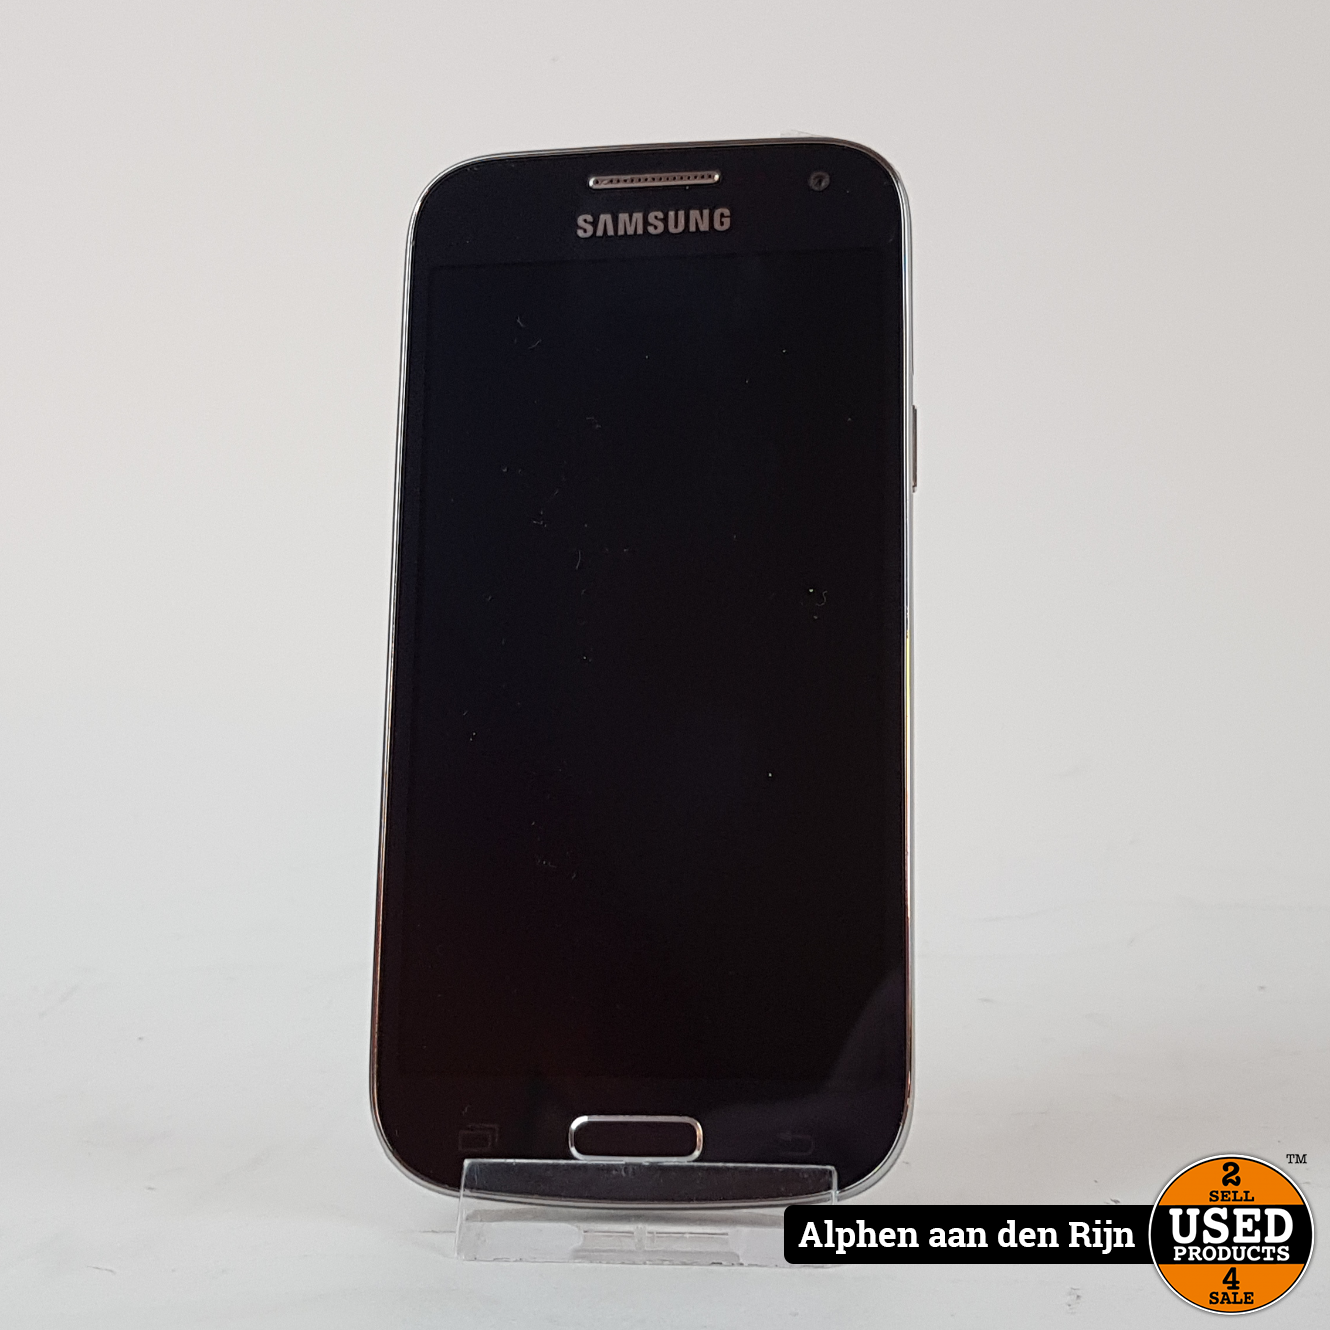 verdediging voor Temmen Samsung Galaxy S4 mini 8gb || Android 4.4 - Used Products Alphen aan den  Rijn